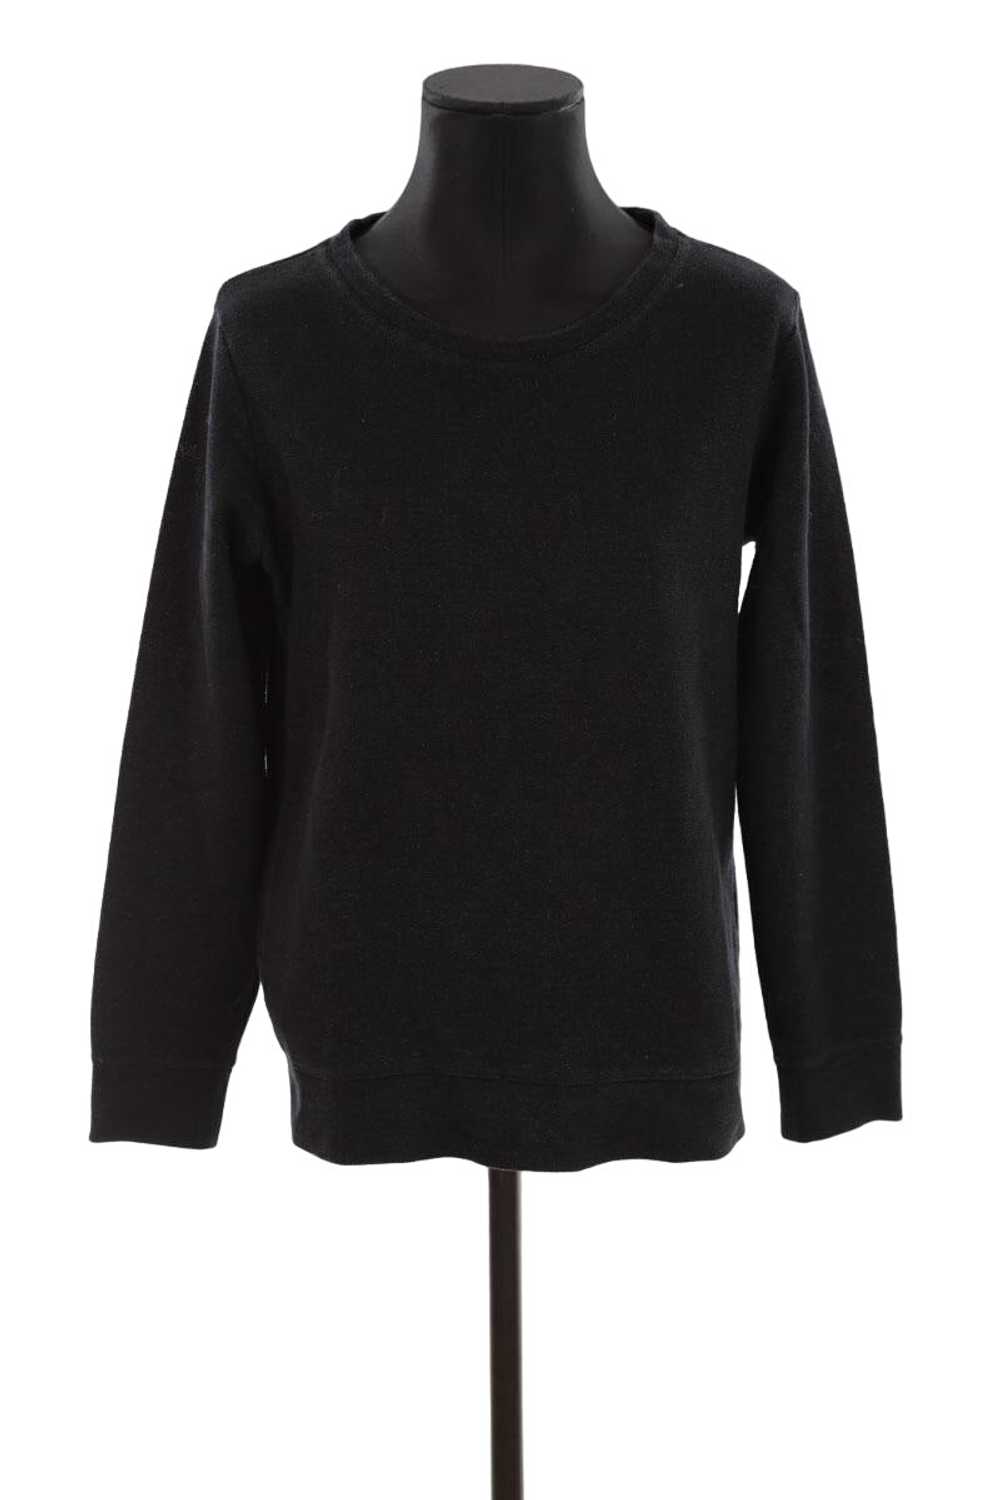 Circular Clothing Pull-over en coton APC noir. Ma… - image 1